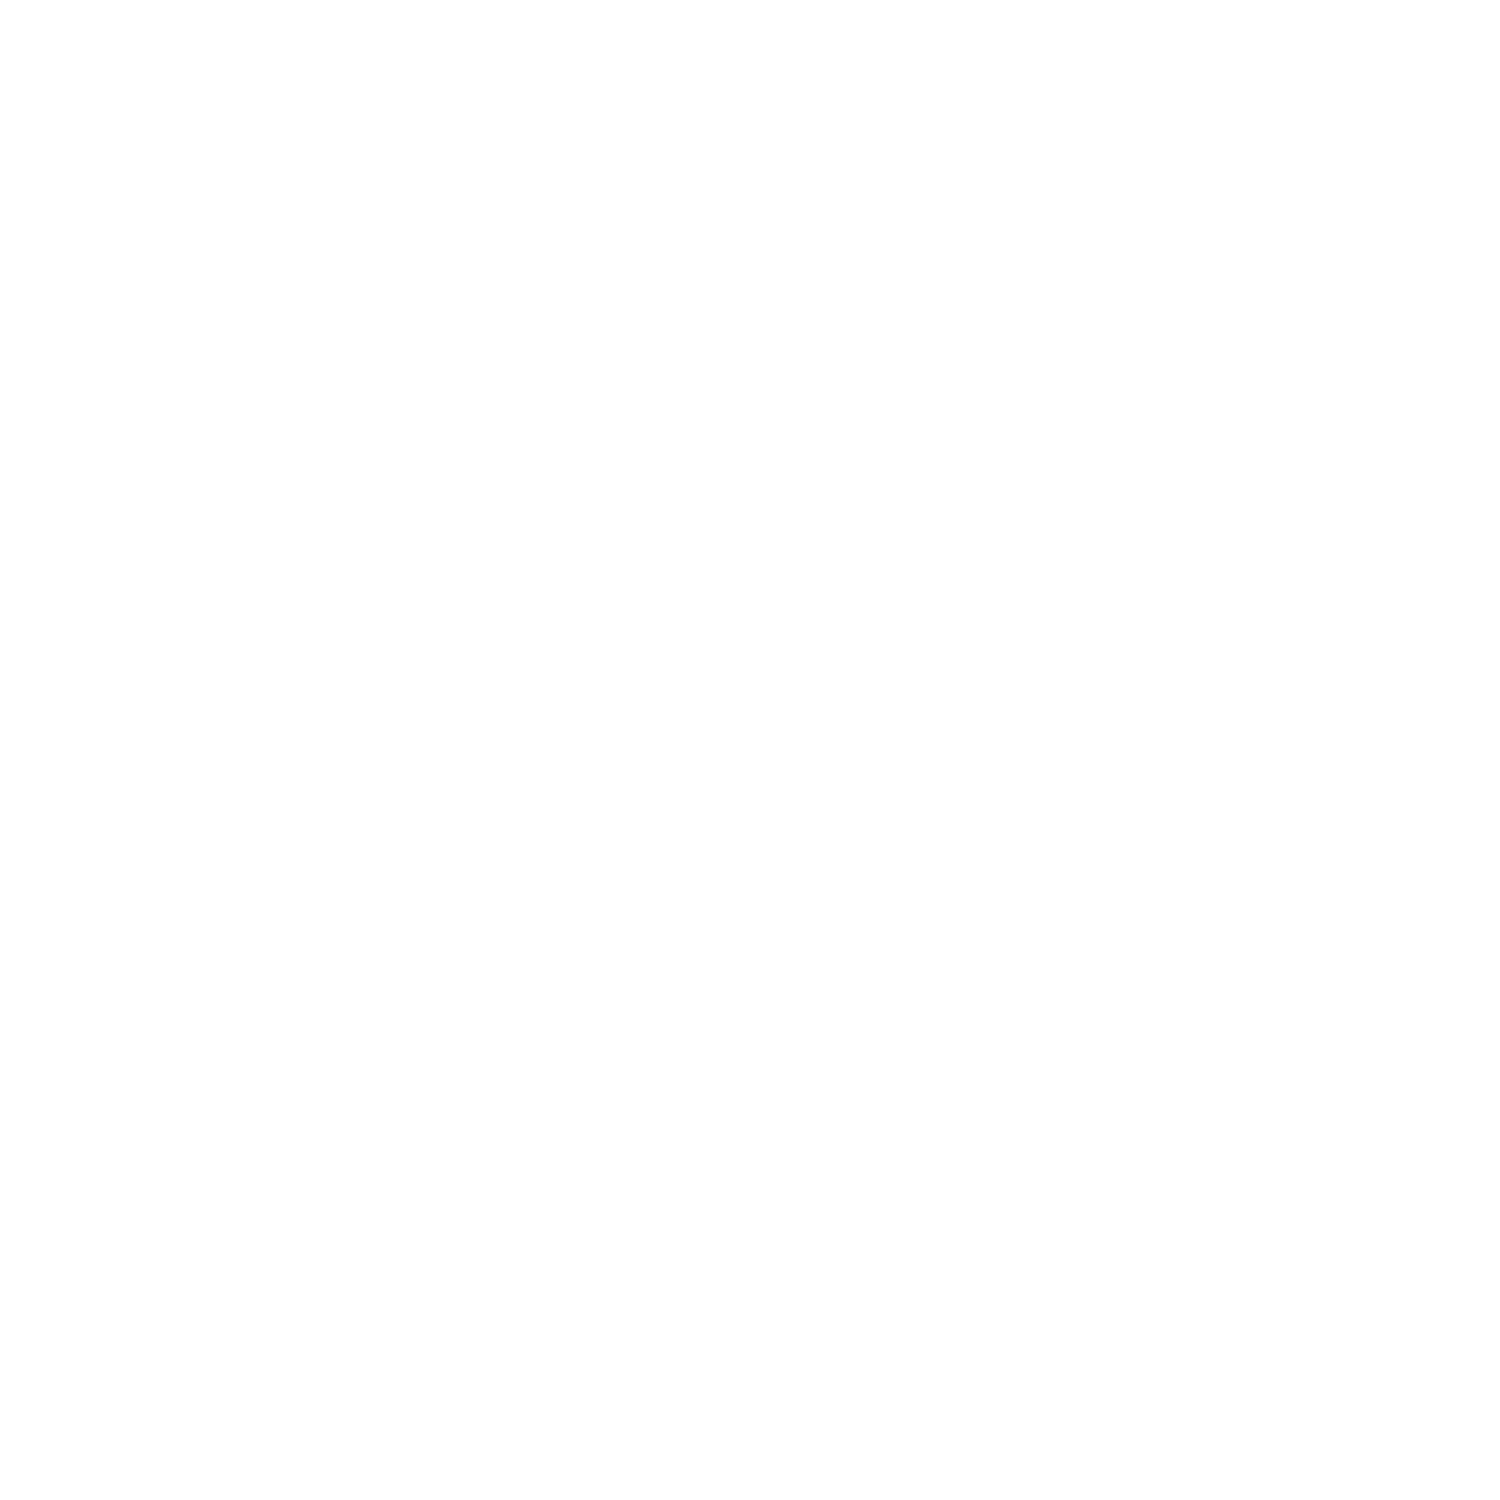 Birch Rural